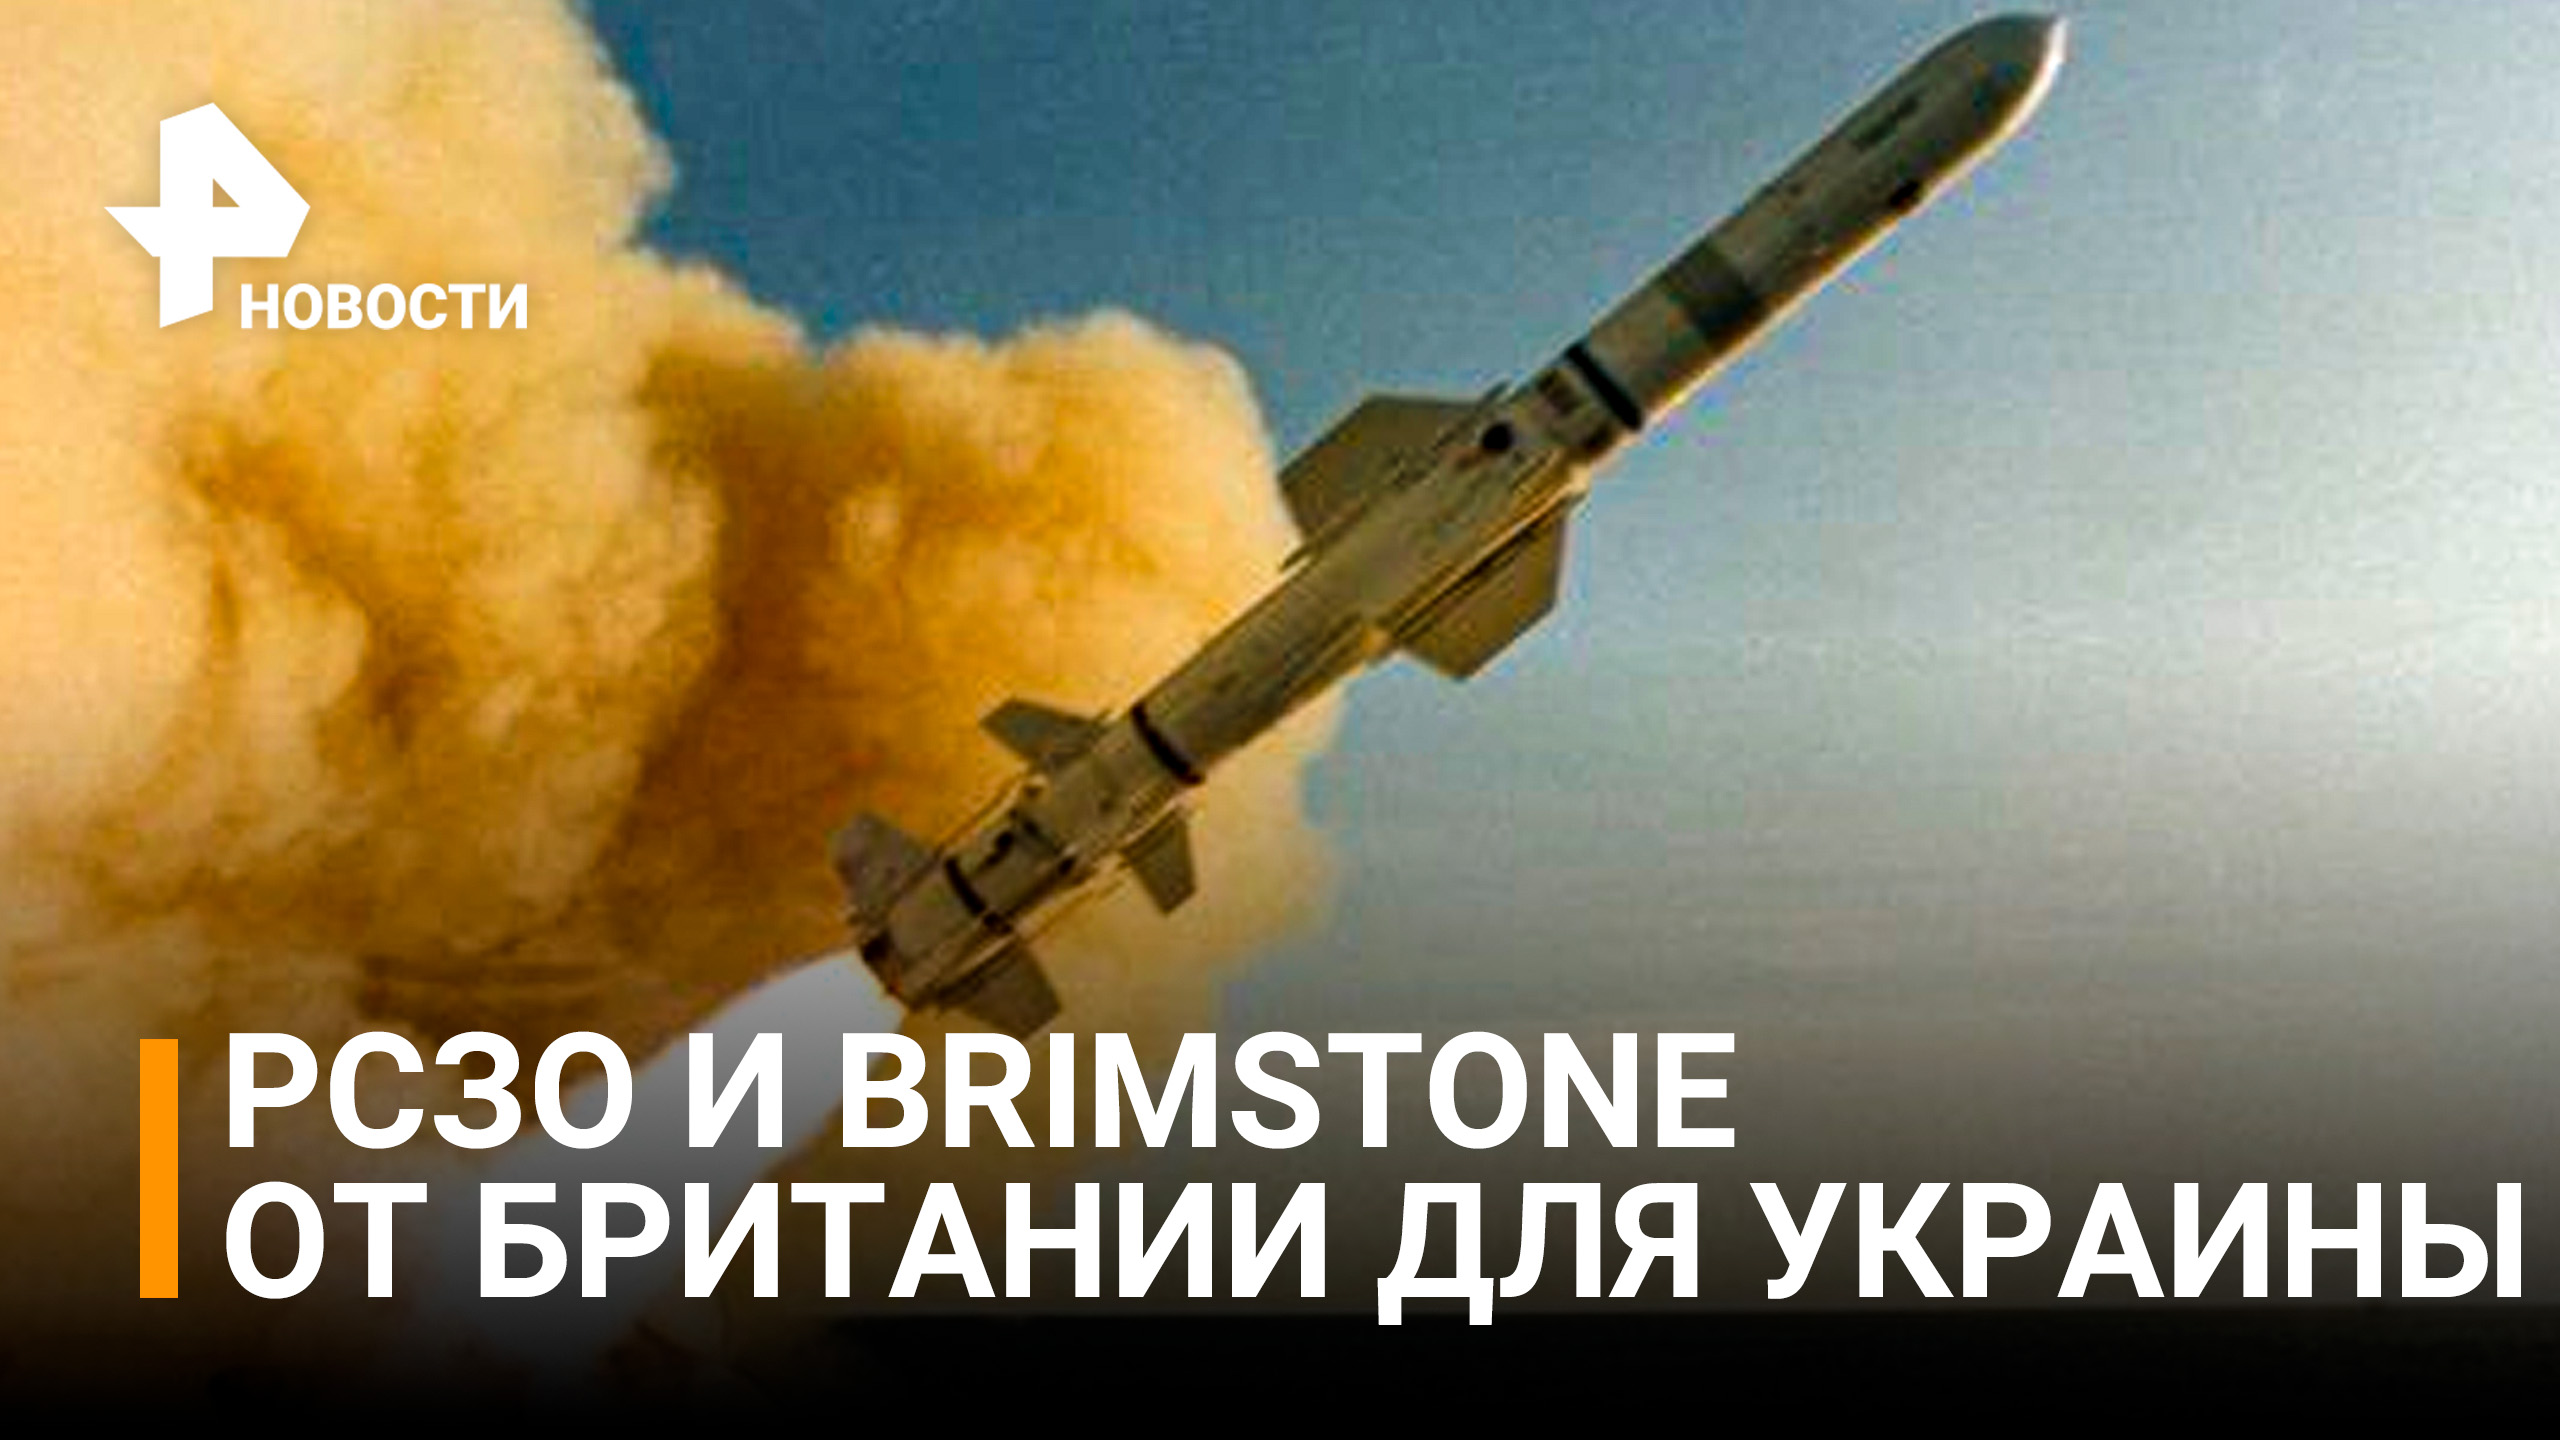 Британия передаст Украине ракеты дальнего действия / РЕН Новости